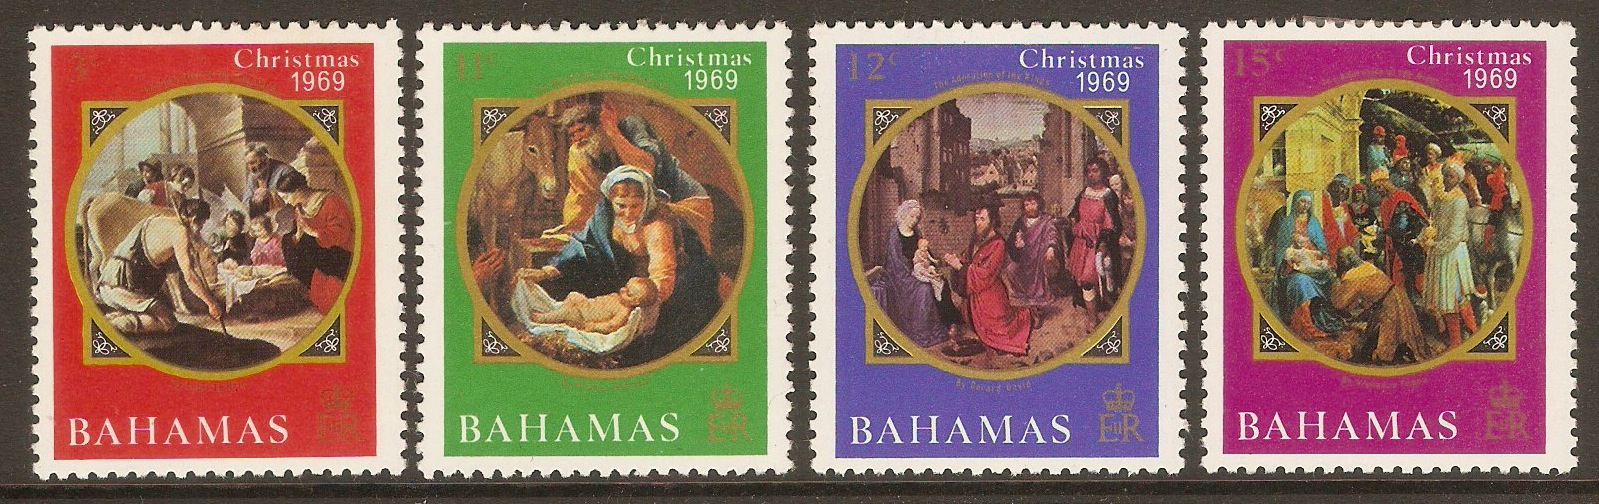 Bahamas 1969 Christmas set. SG338-SG341.